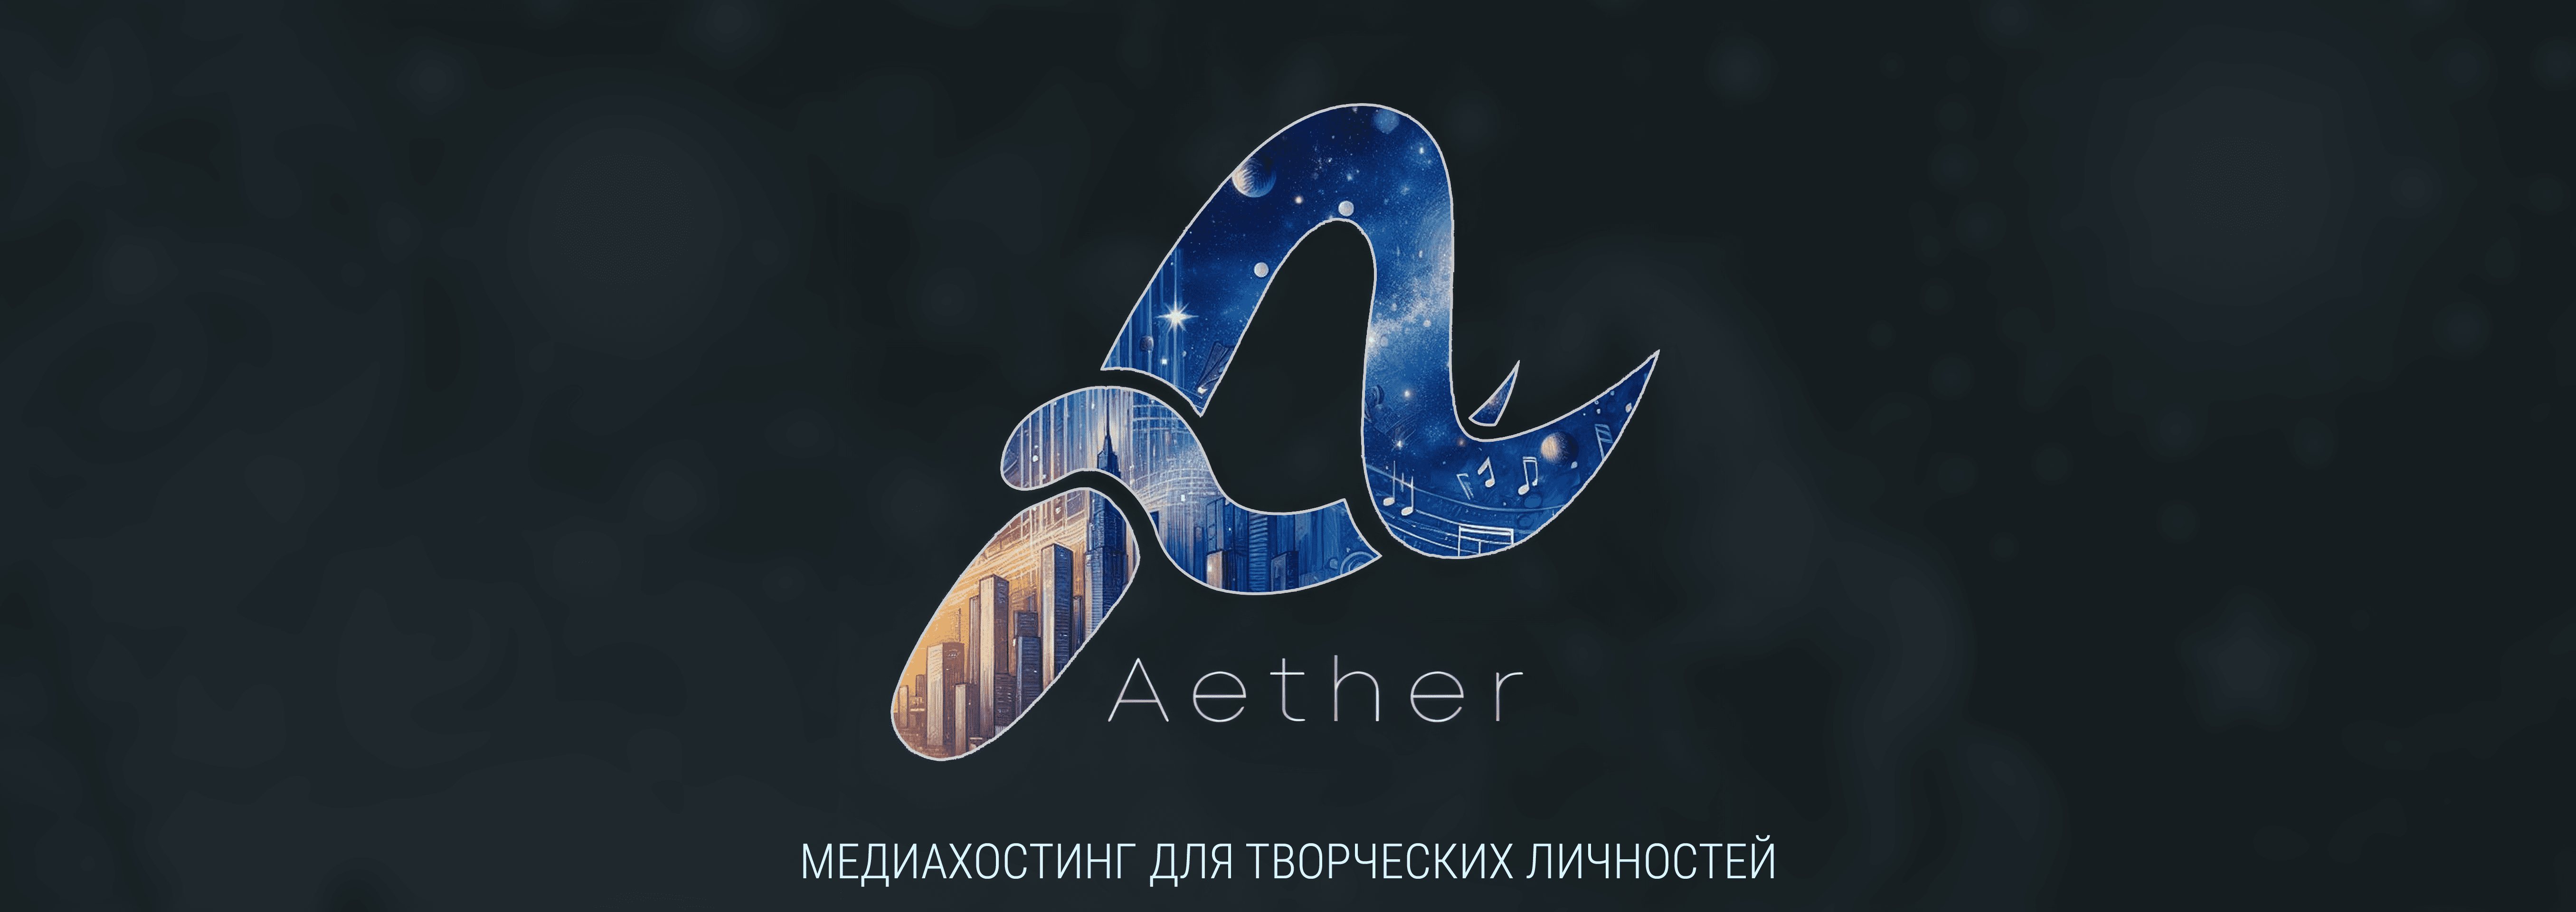 EXP24 Aether - медиахостинг для творческих личностей